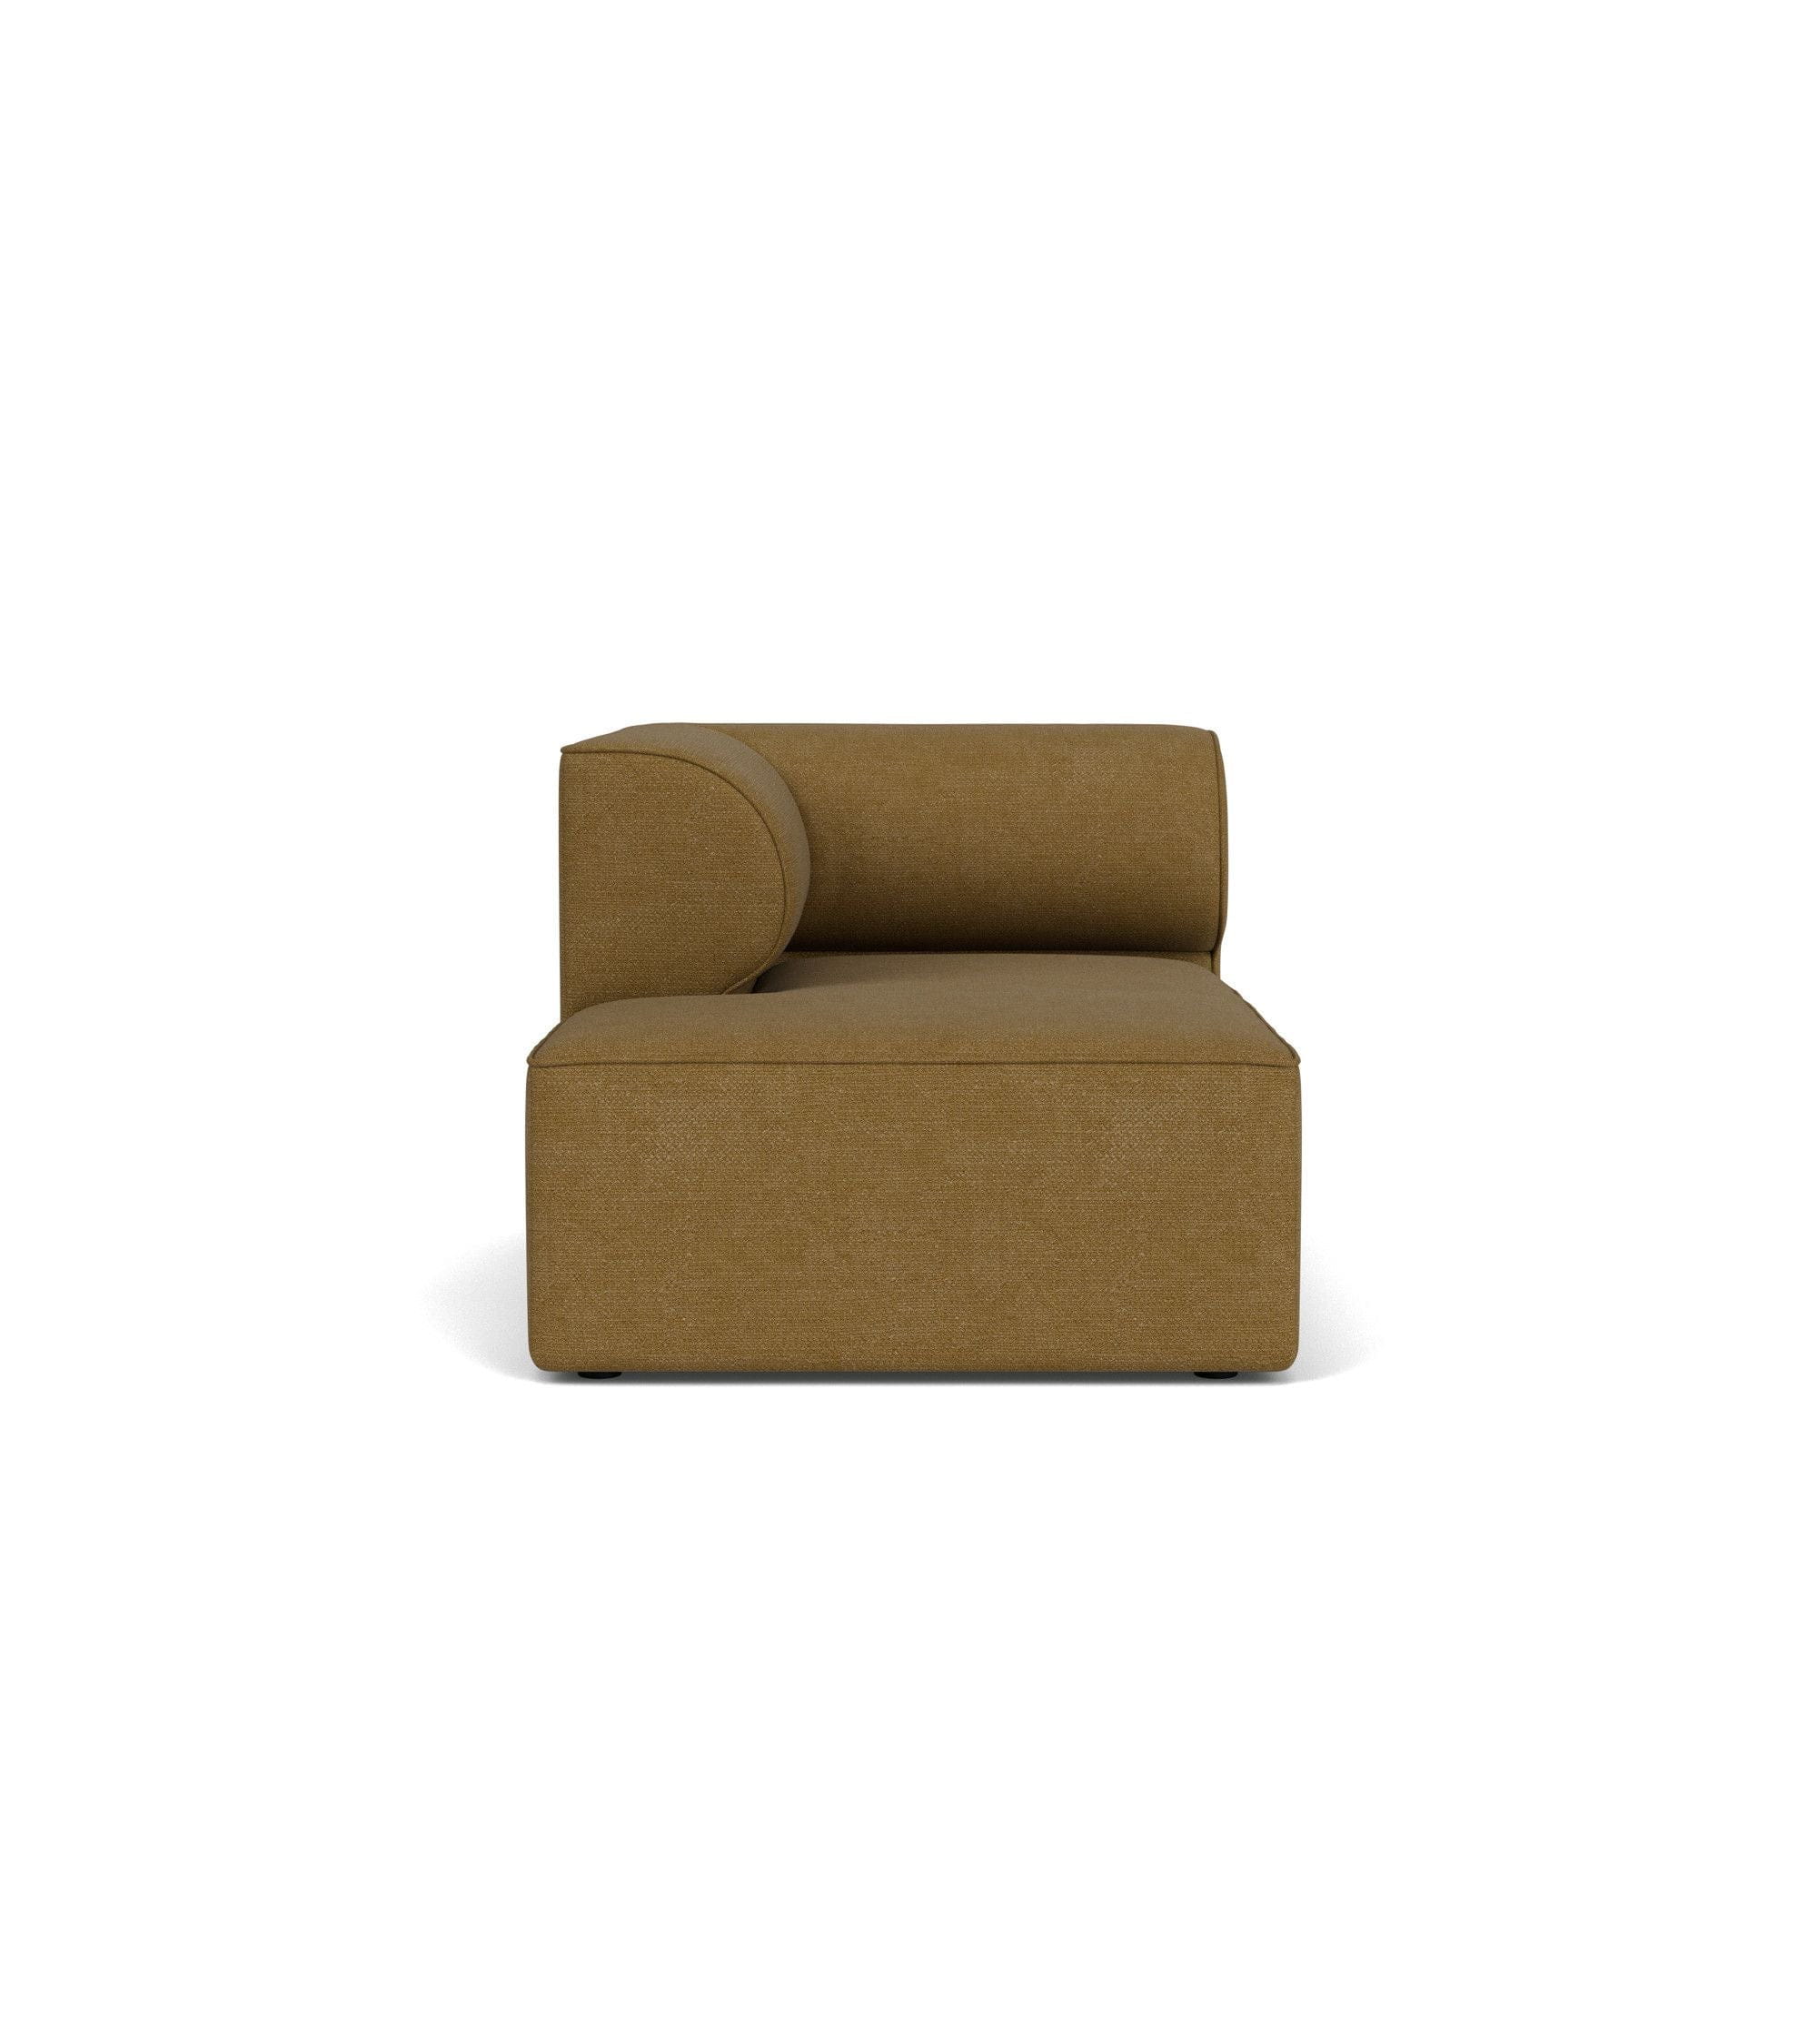 Audo Copenhagen Eave Modular Upholstered Sofa Chaise Longue 86x129 Cm Left, Bouclé Gold